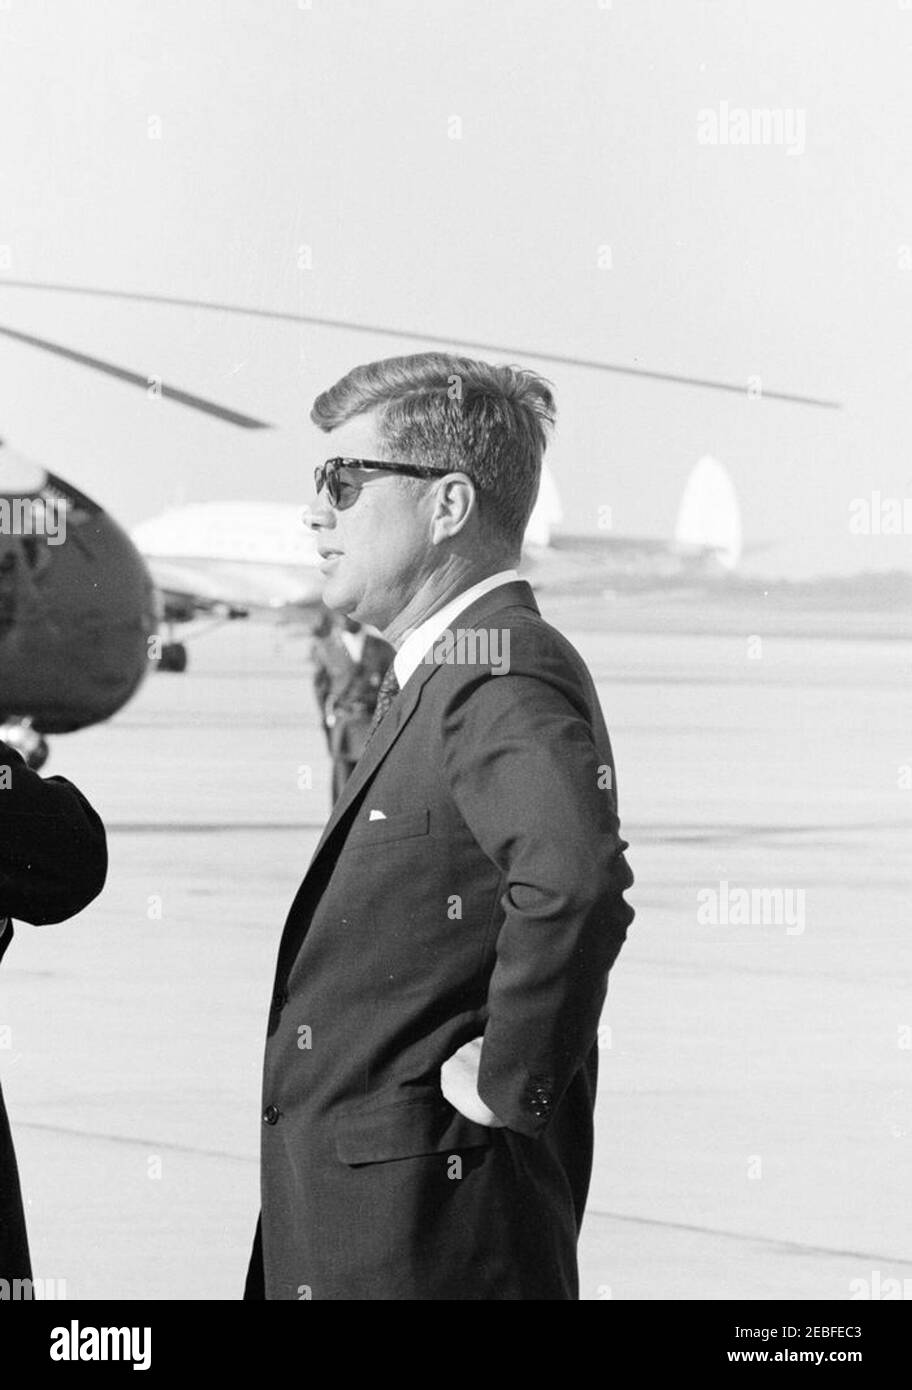 Cerimonie di arrivo per Harold Macmillan, primo ministro della Gran Bretagna, 16:50. Il presidente John F. Kennedy (indossando gli occhiali da sole) partecipa alle cerimonie di arrivo in onore del primo ministro della Gran Bretagna, Harold Macmillan. Andrews Air Force base, Maryland. Foto Stock